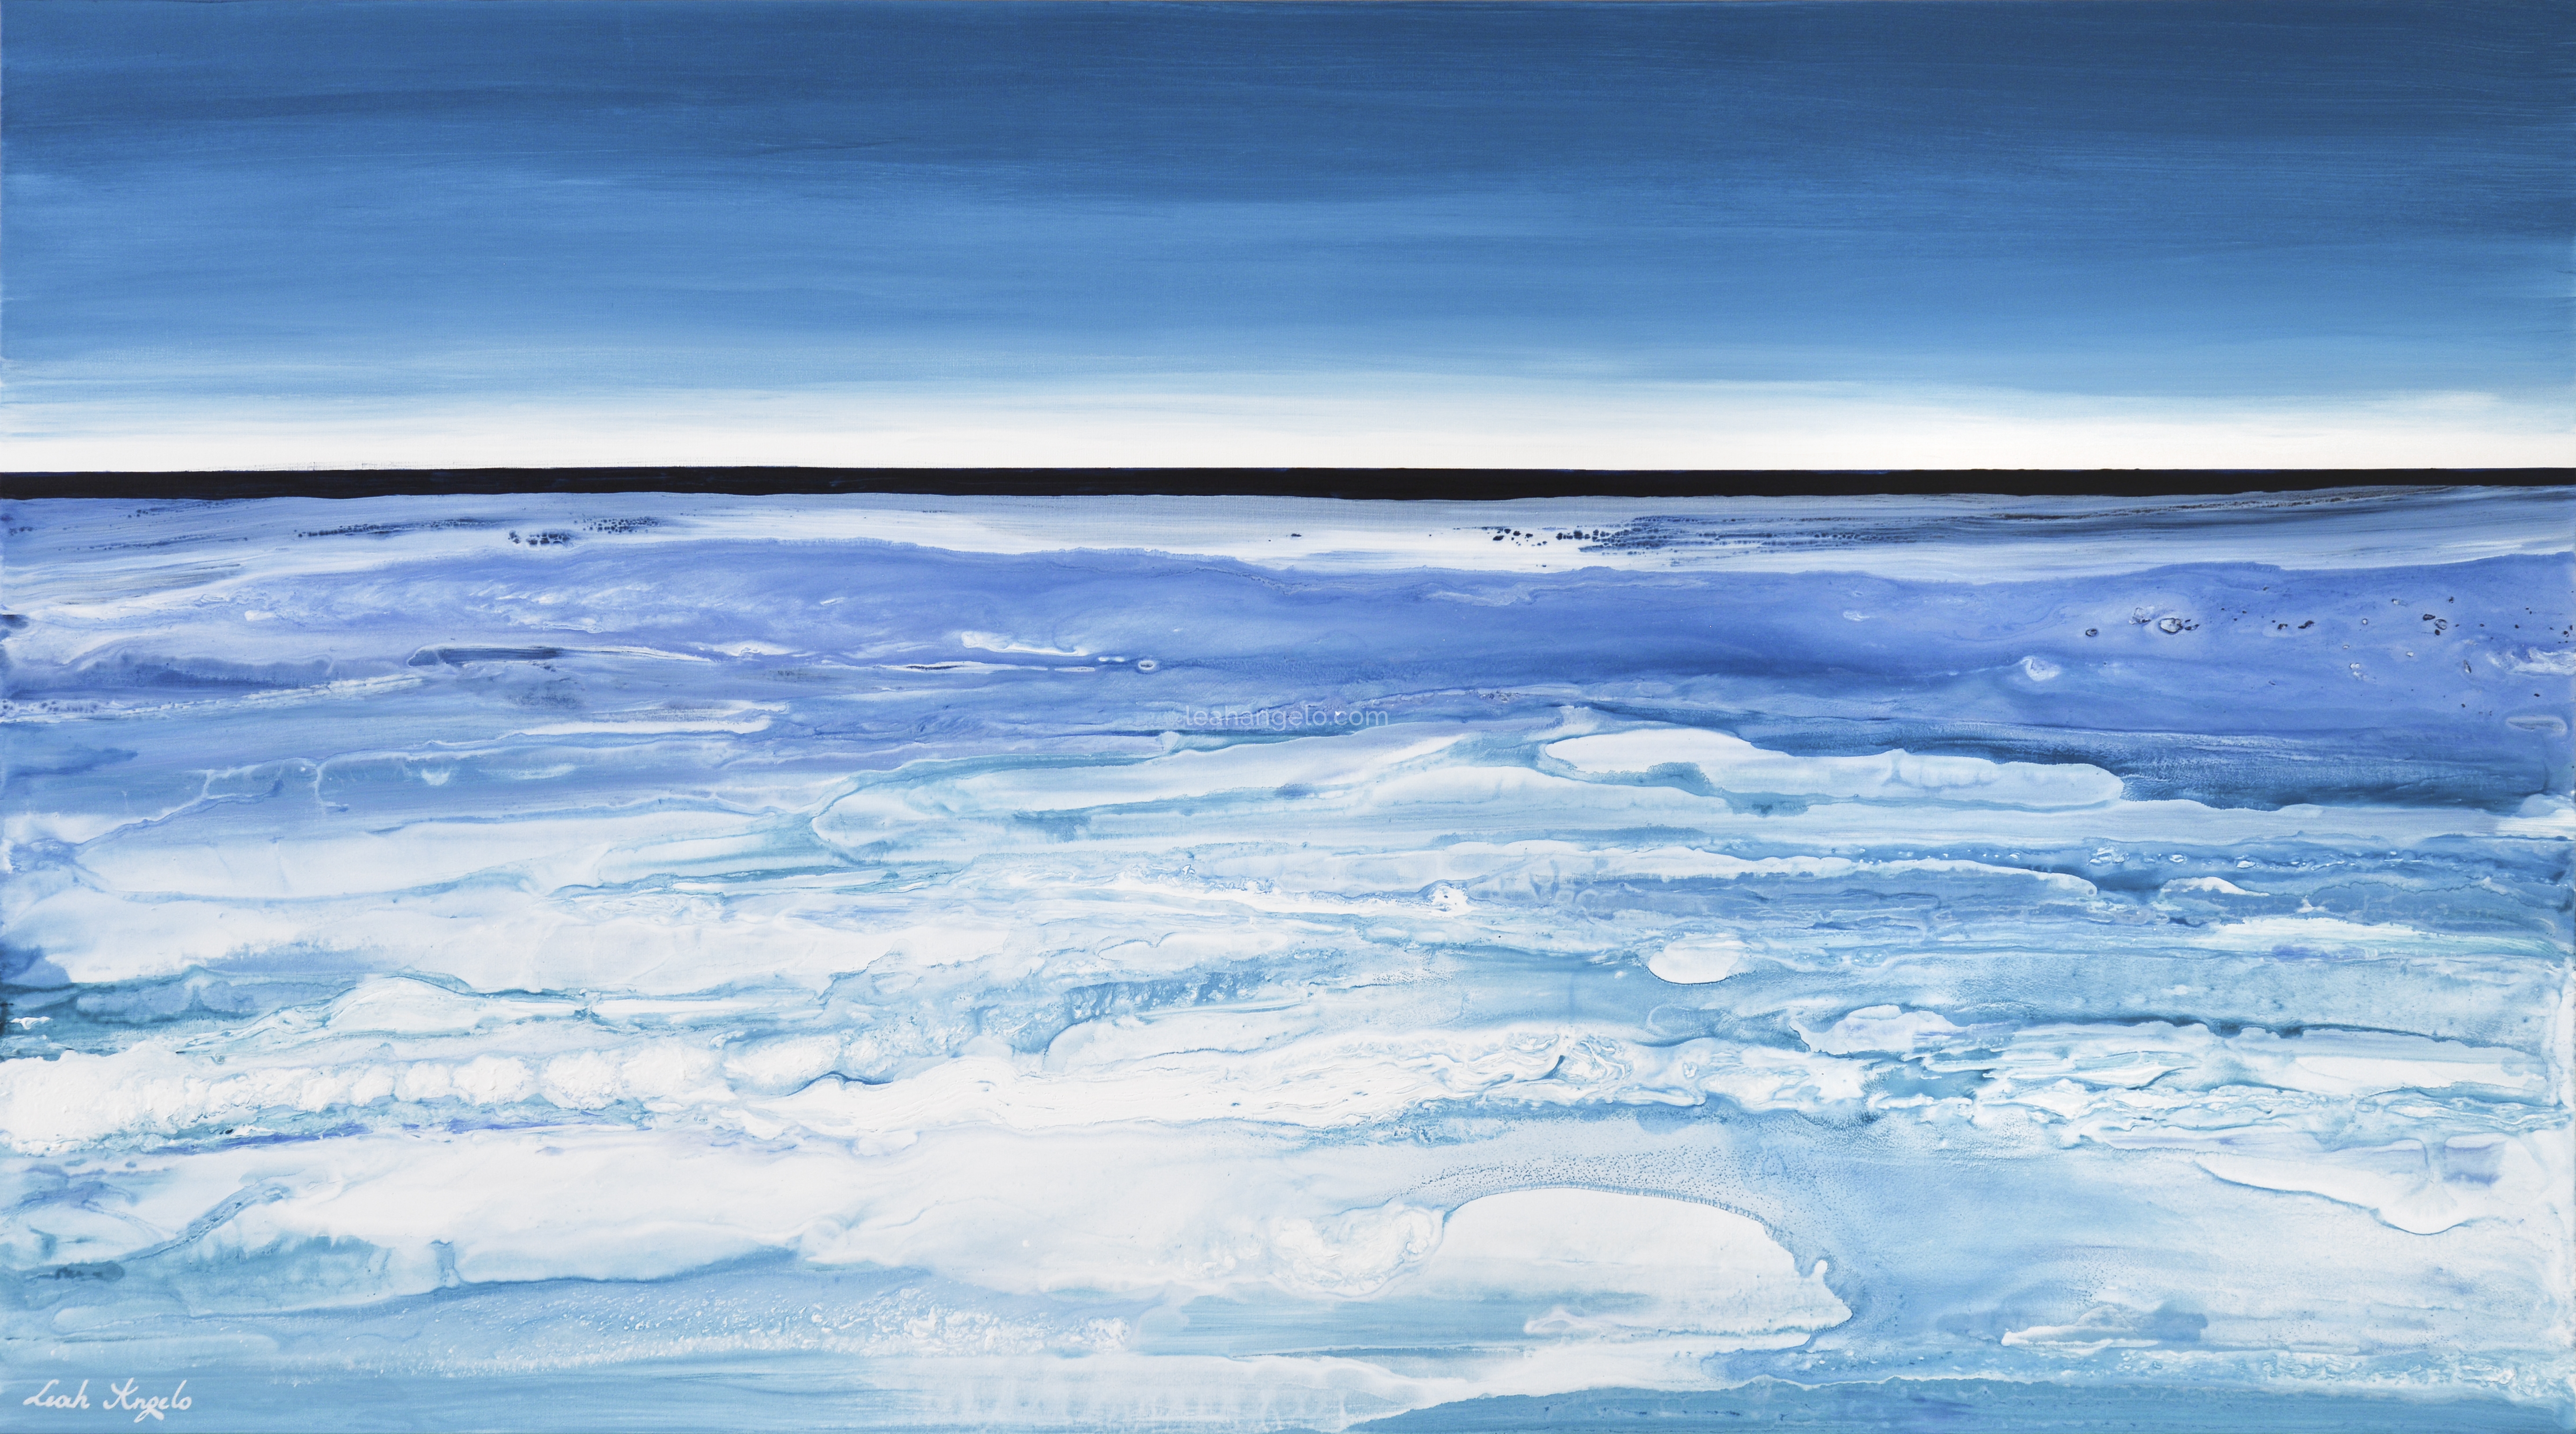 GLISTENING SEA acrylics on canvas - (162 x 89cm) Leah Angelo